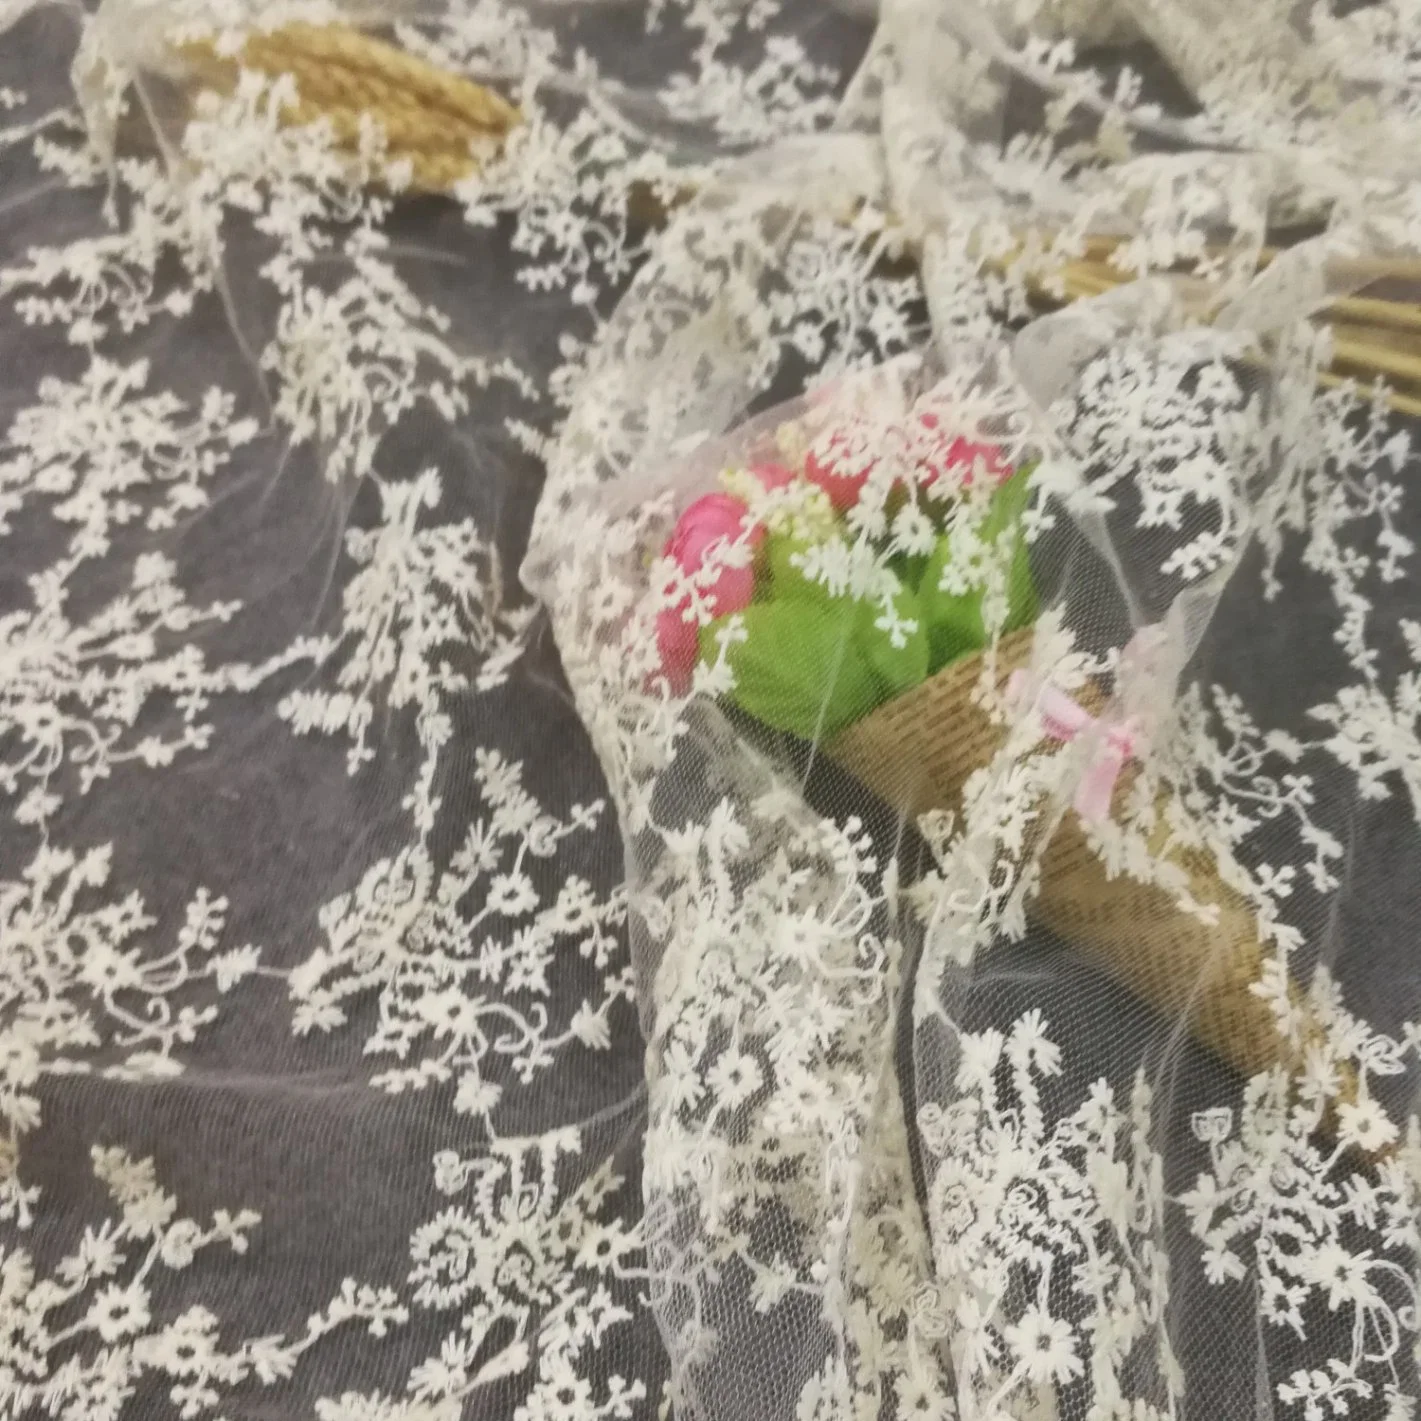 Tejido de malla de hilo soluble en agua tejido de malla tejido bordado malla tridimensional Flor Hollow trigo Flor ropa interior Joyería hecha a mano tejido DIY